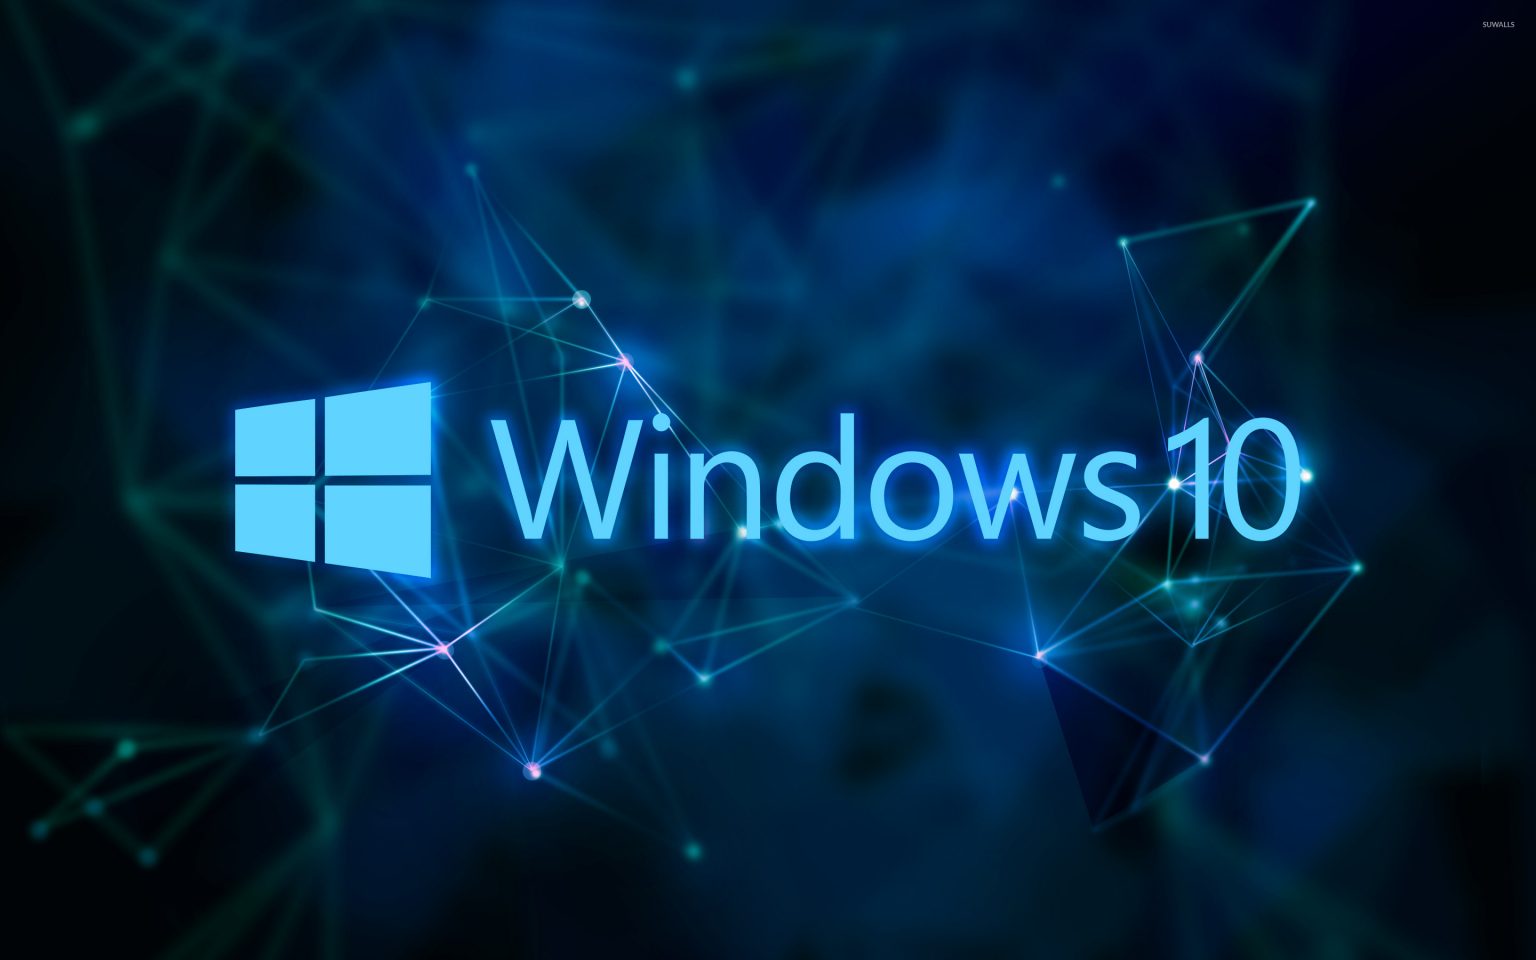 Hình nền windows 10 đơn giản 20